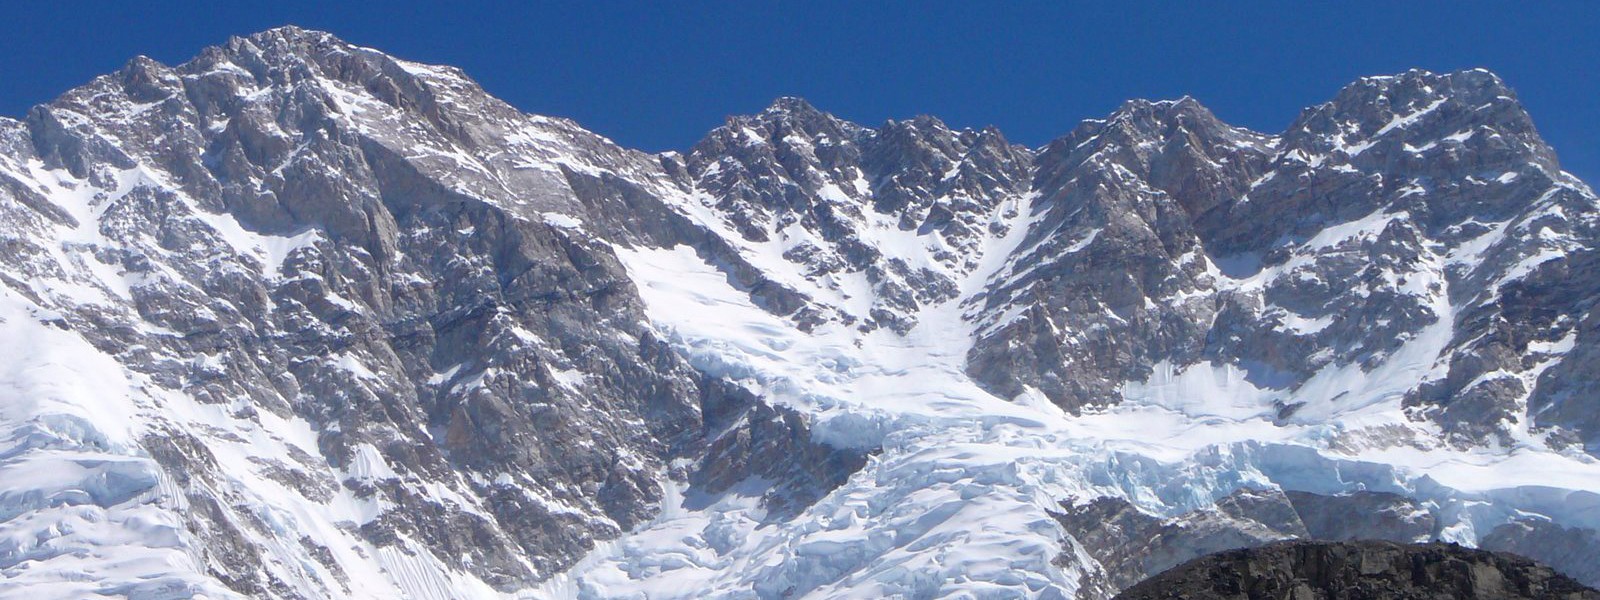 Mt. Kanchenjunga Himalayas